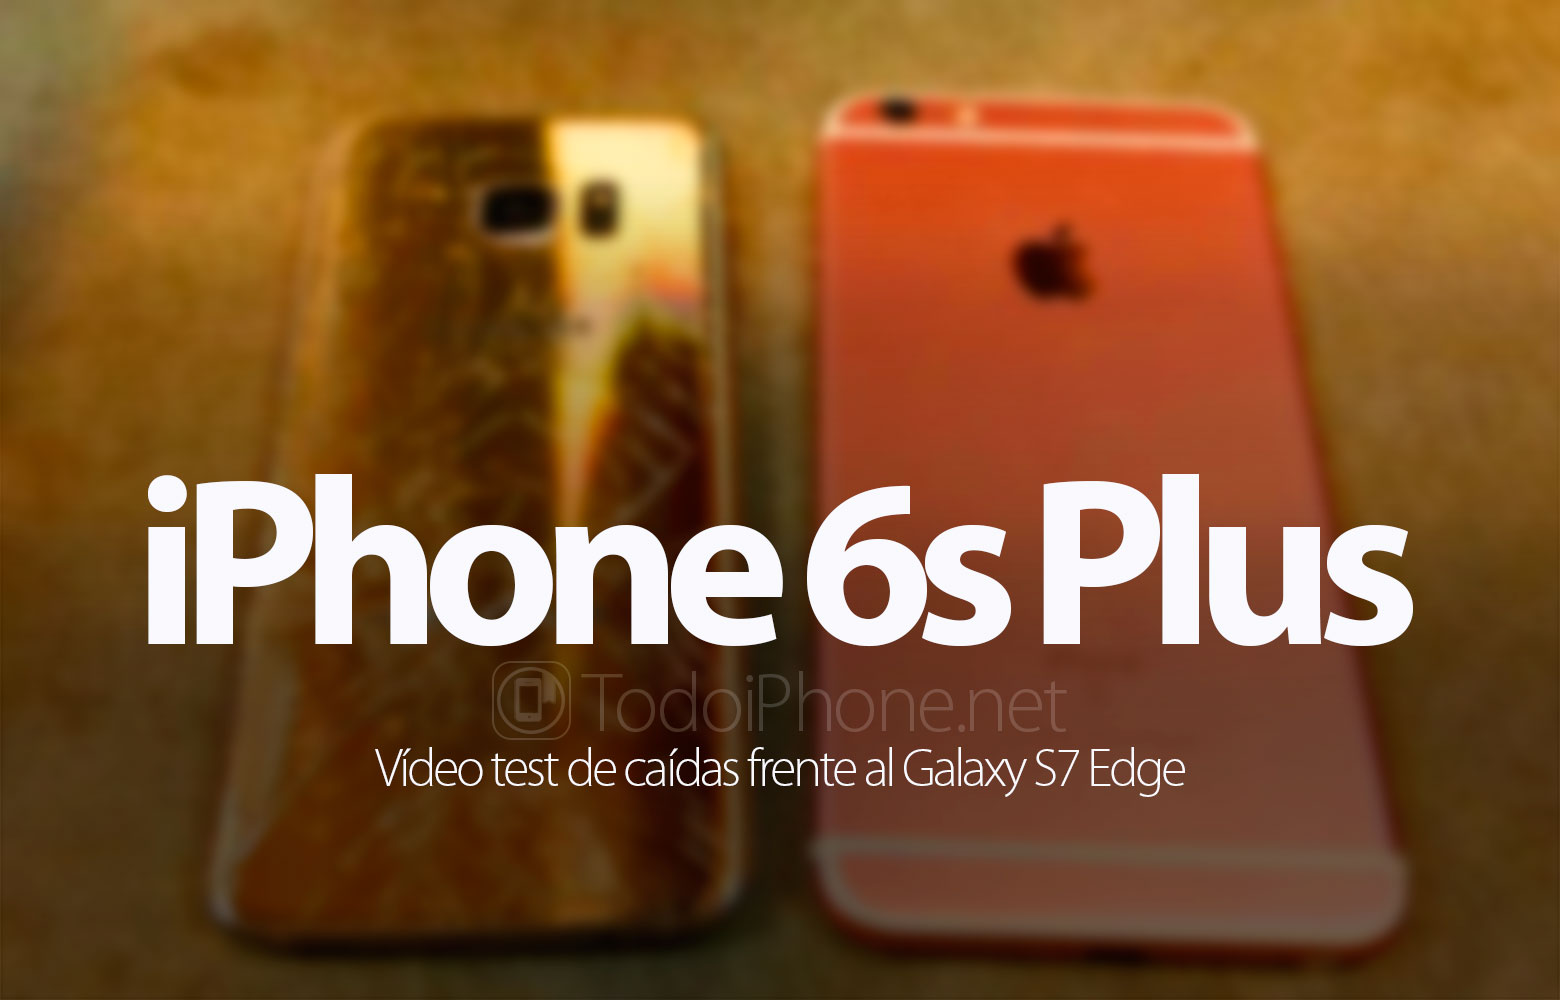 iphone-6s-plus-galaxy-s7-edge-test-caidas